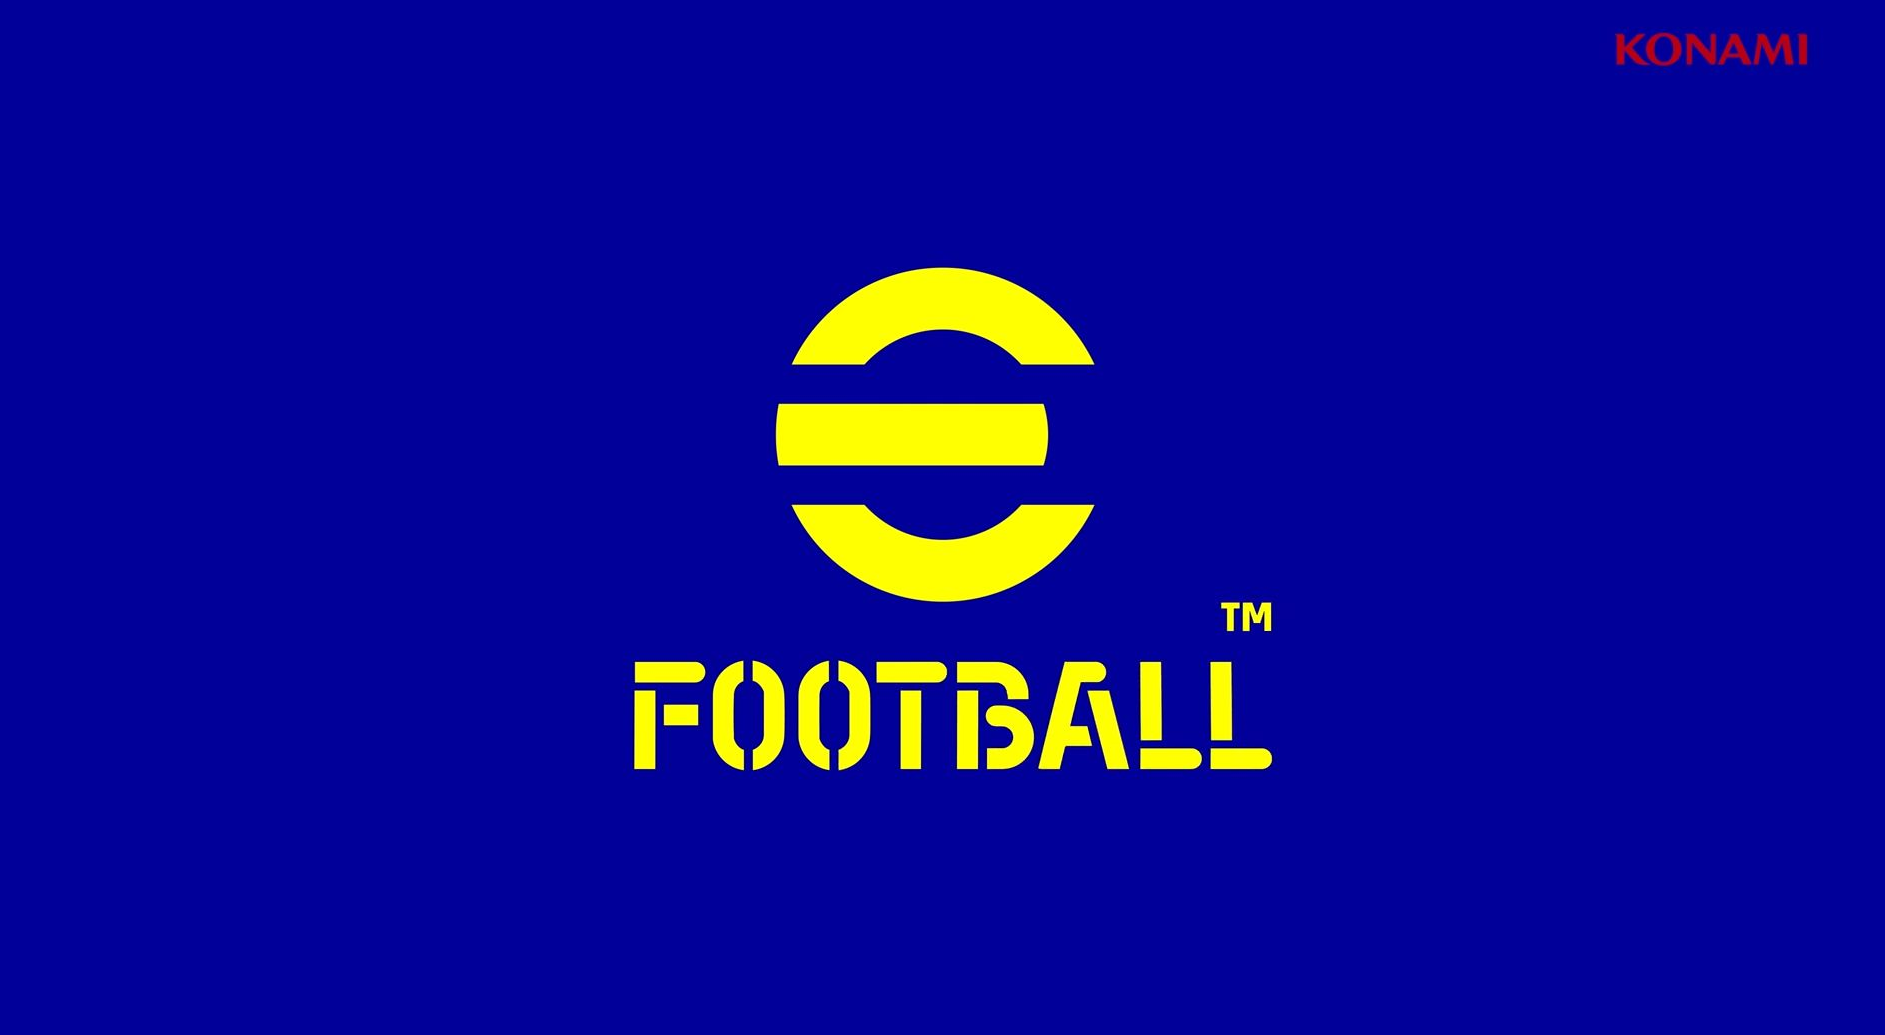 eFootball พร้อมปล่อยแพตช์ใหม่แก้ไขบัคในวันที่ 5 พฤศจิกายนนี้แล้ว